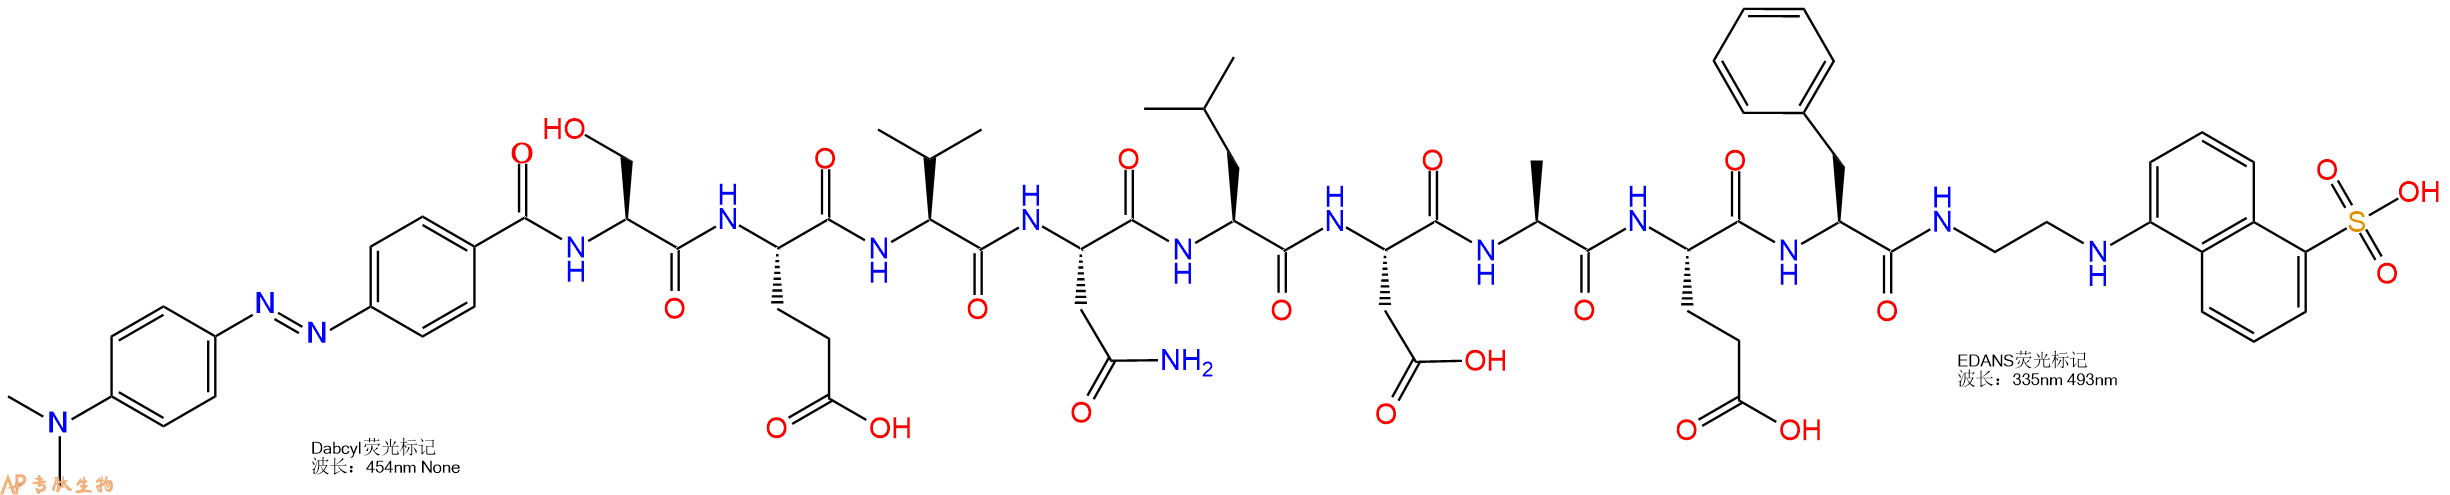 专肽生物产品DABCYL和EDANS双标记肽:DABCYL-SEVNLDAF-EDANS1802078-36-9